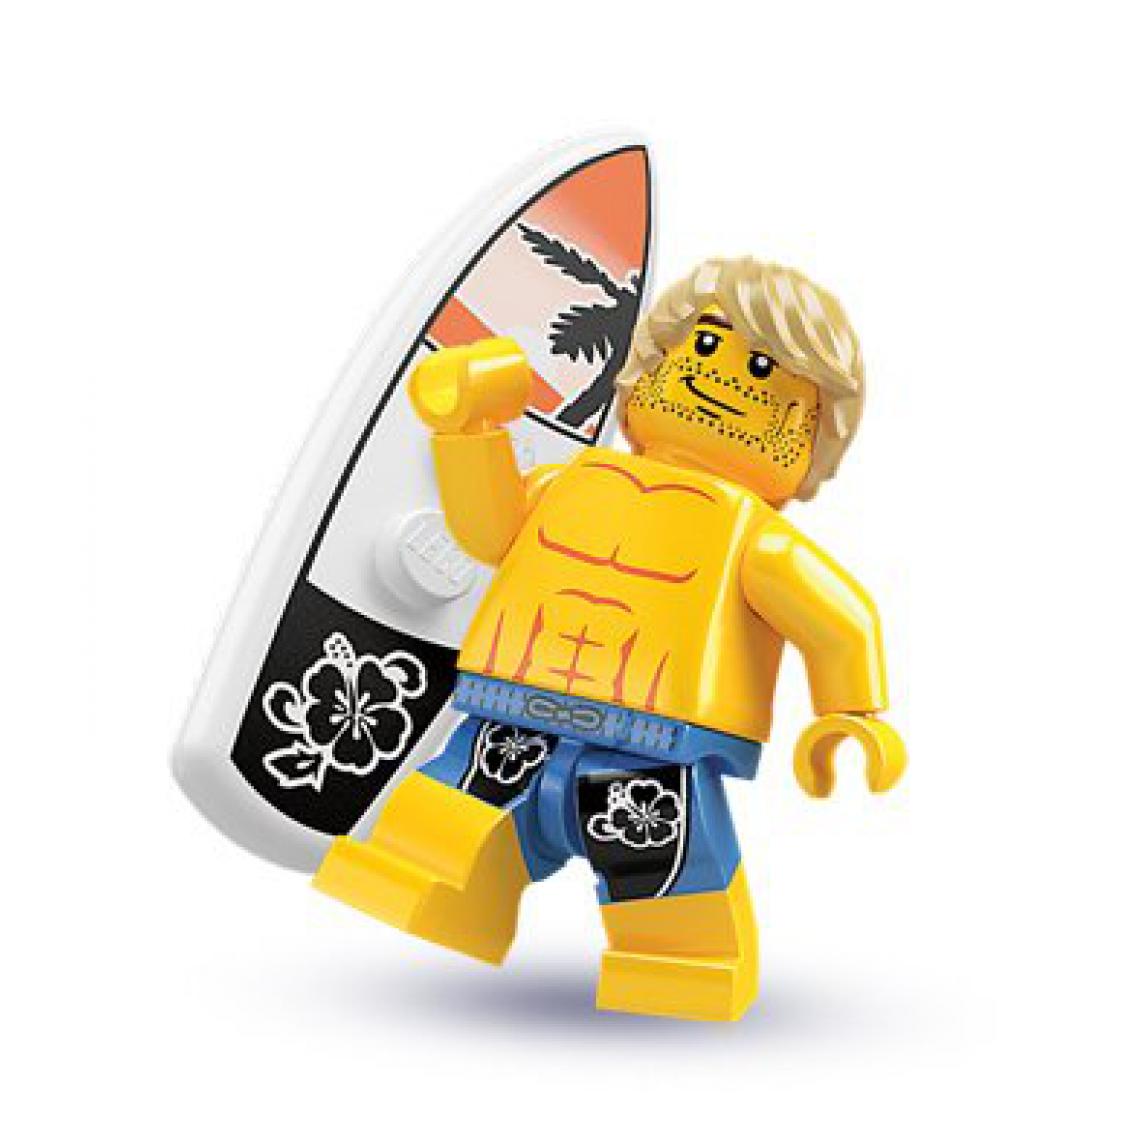 Lego - LEgO Minifigure collection Series 2 - Minifigure Surfer Dude Loose - Briques et blocs